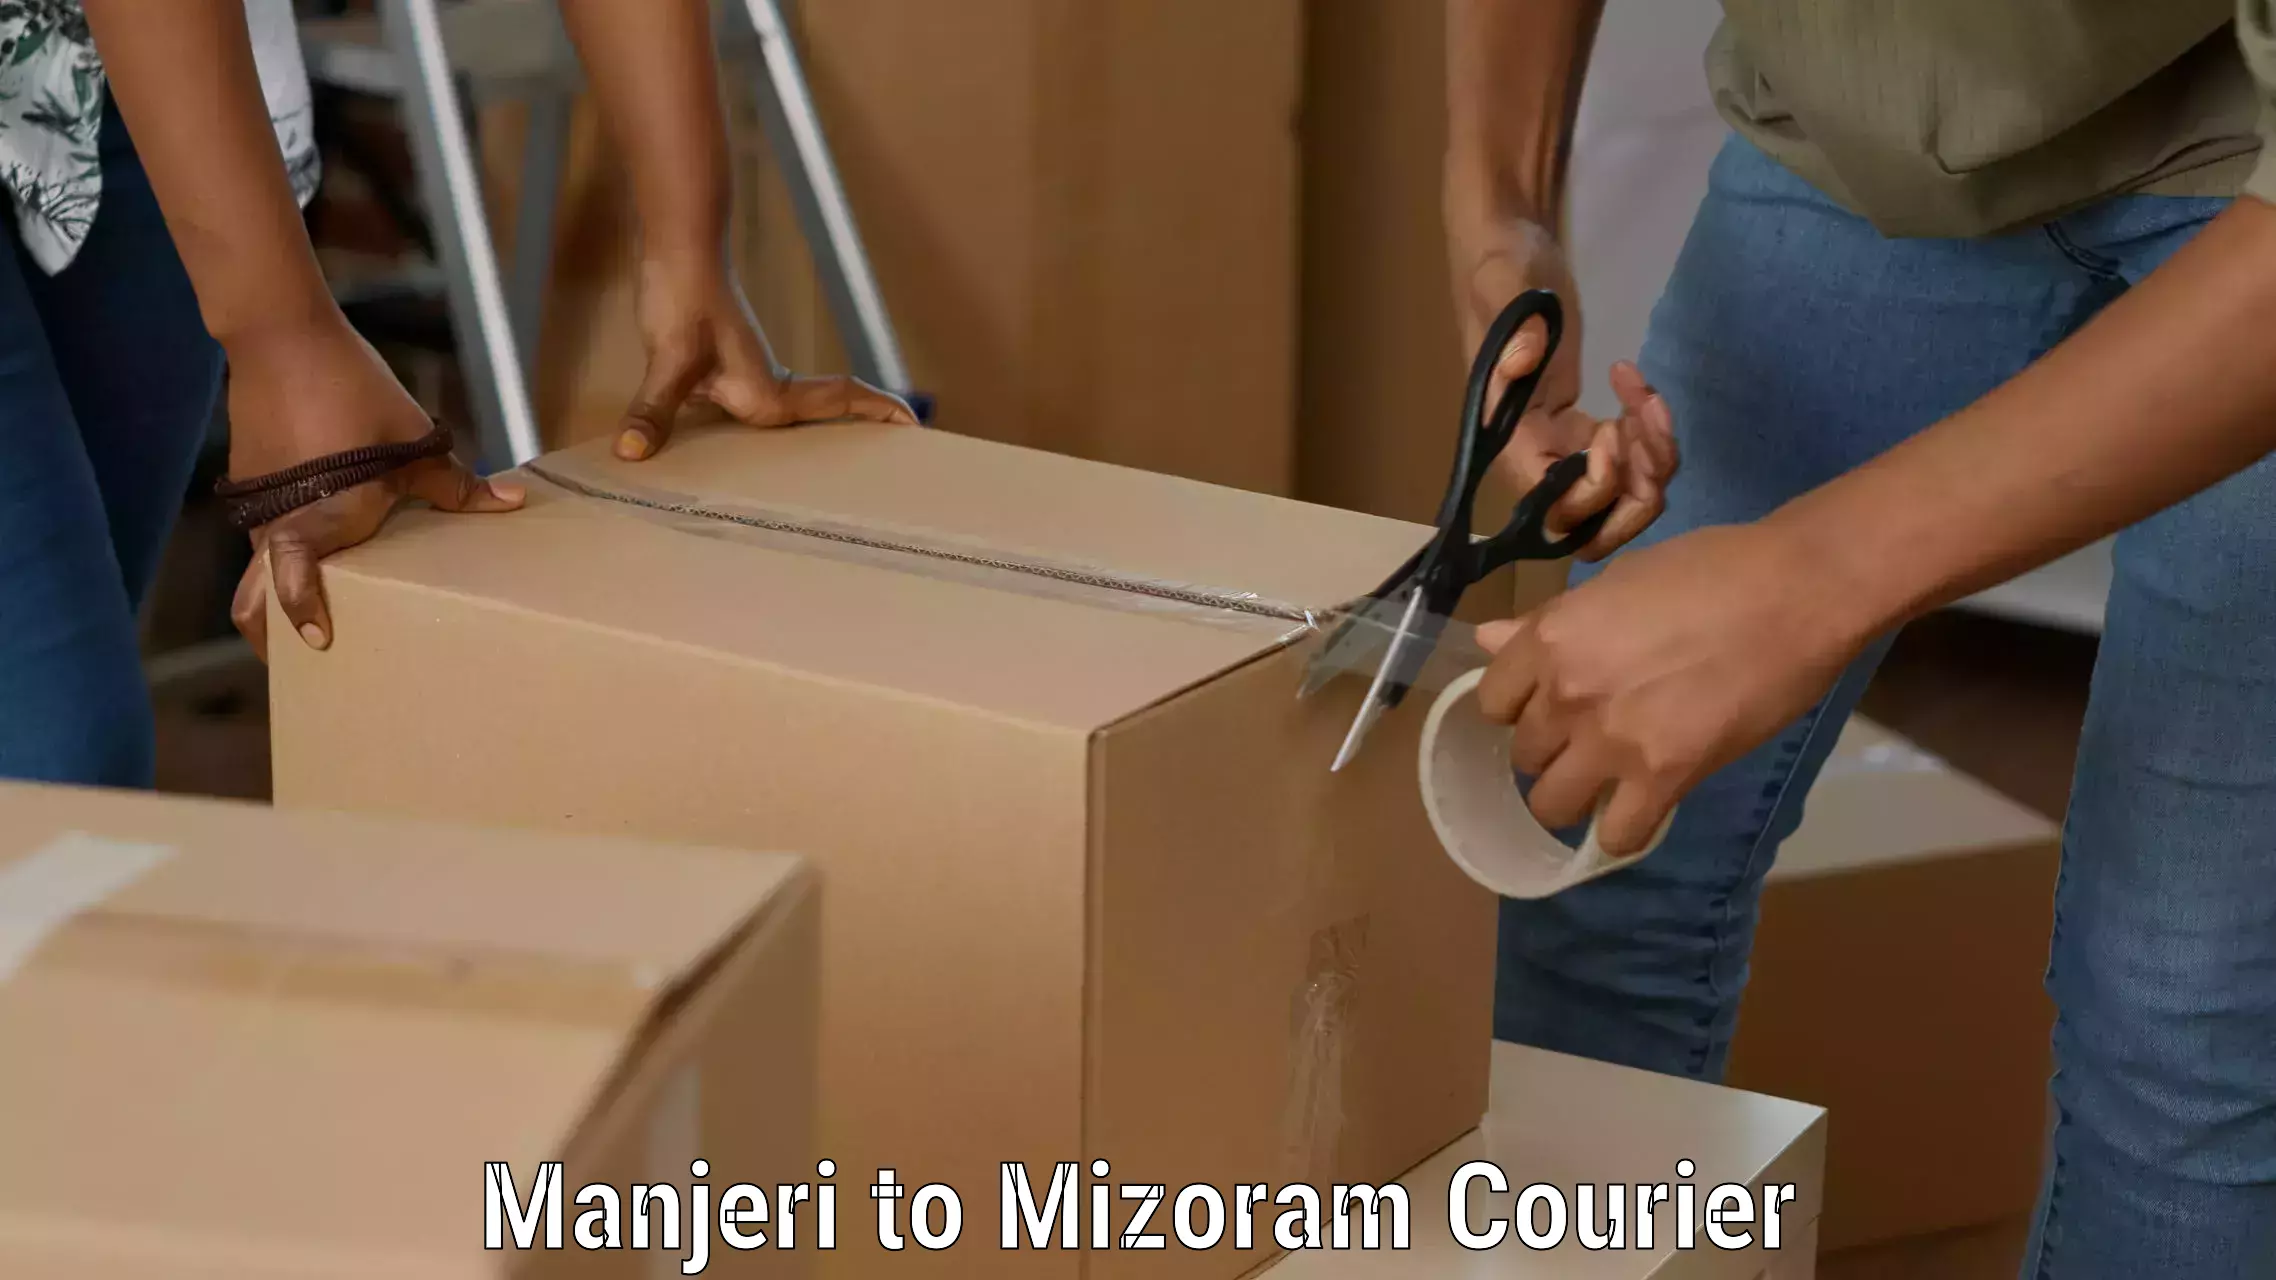 Professional courier handling Manjeri to Mizoram